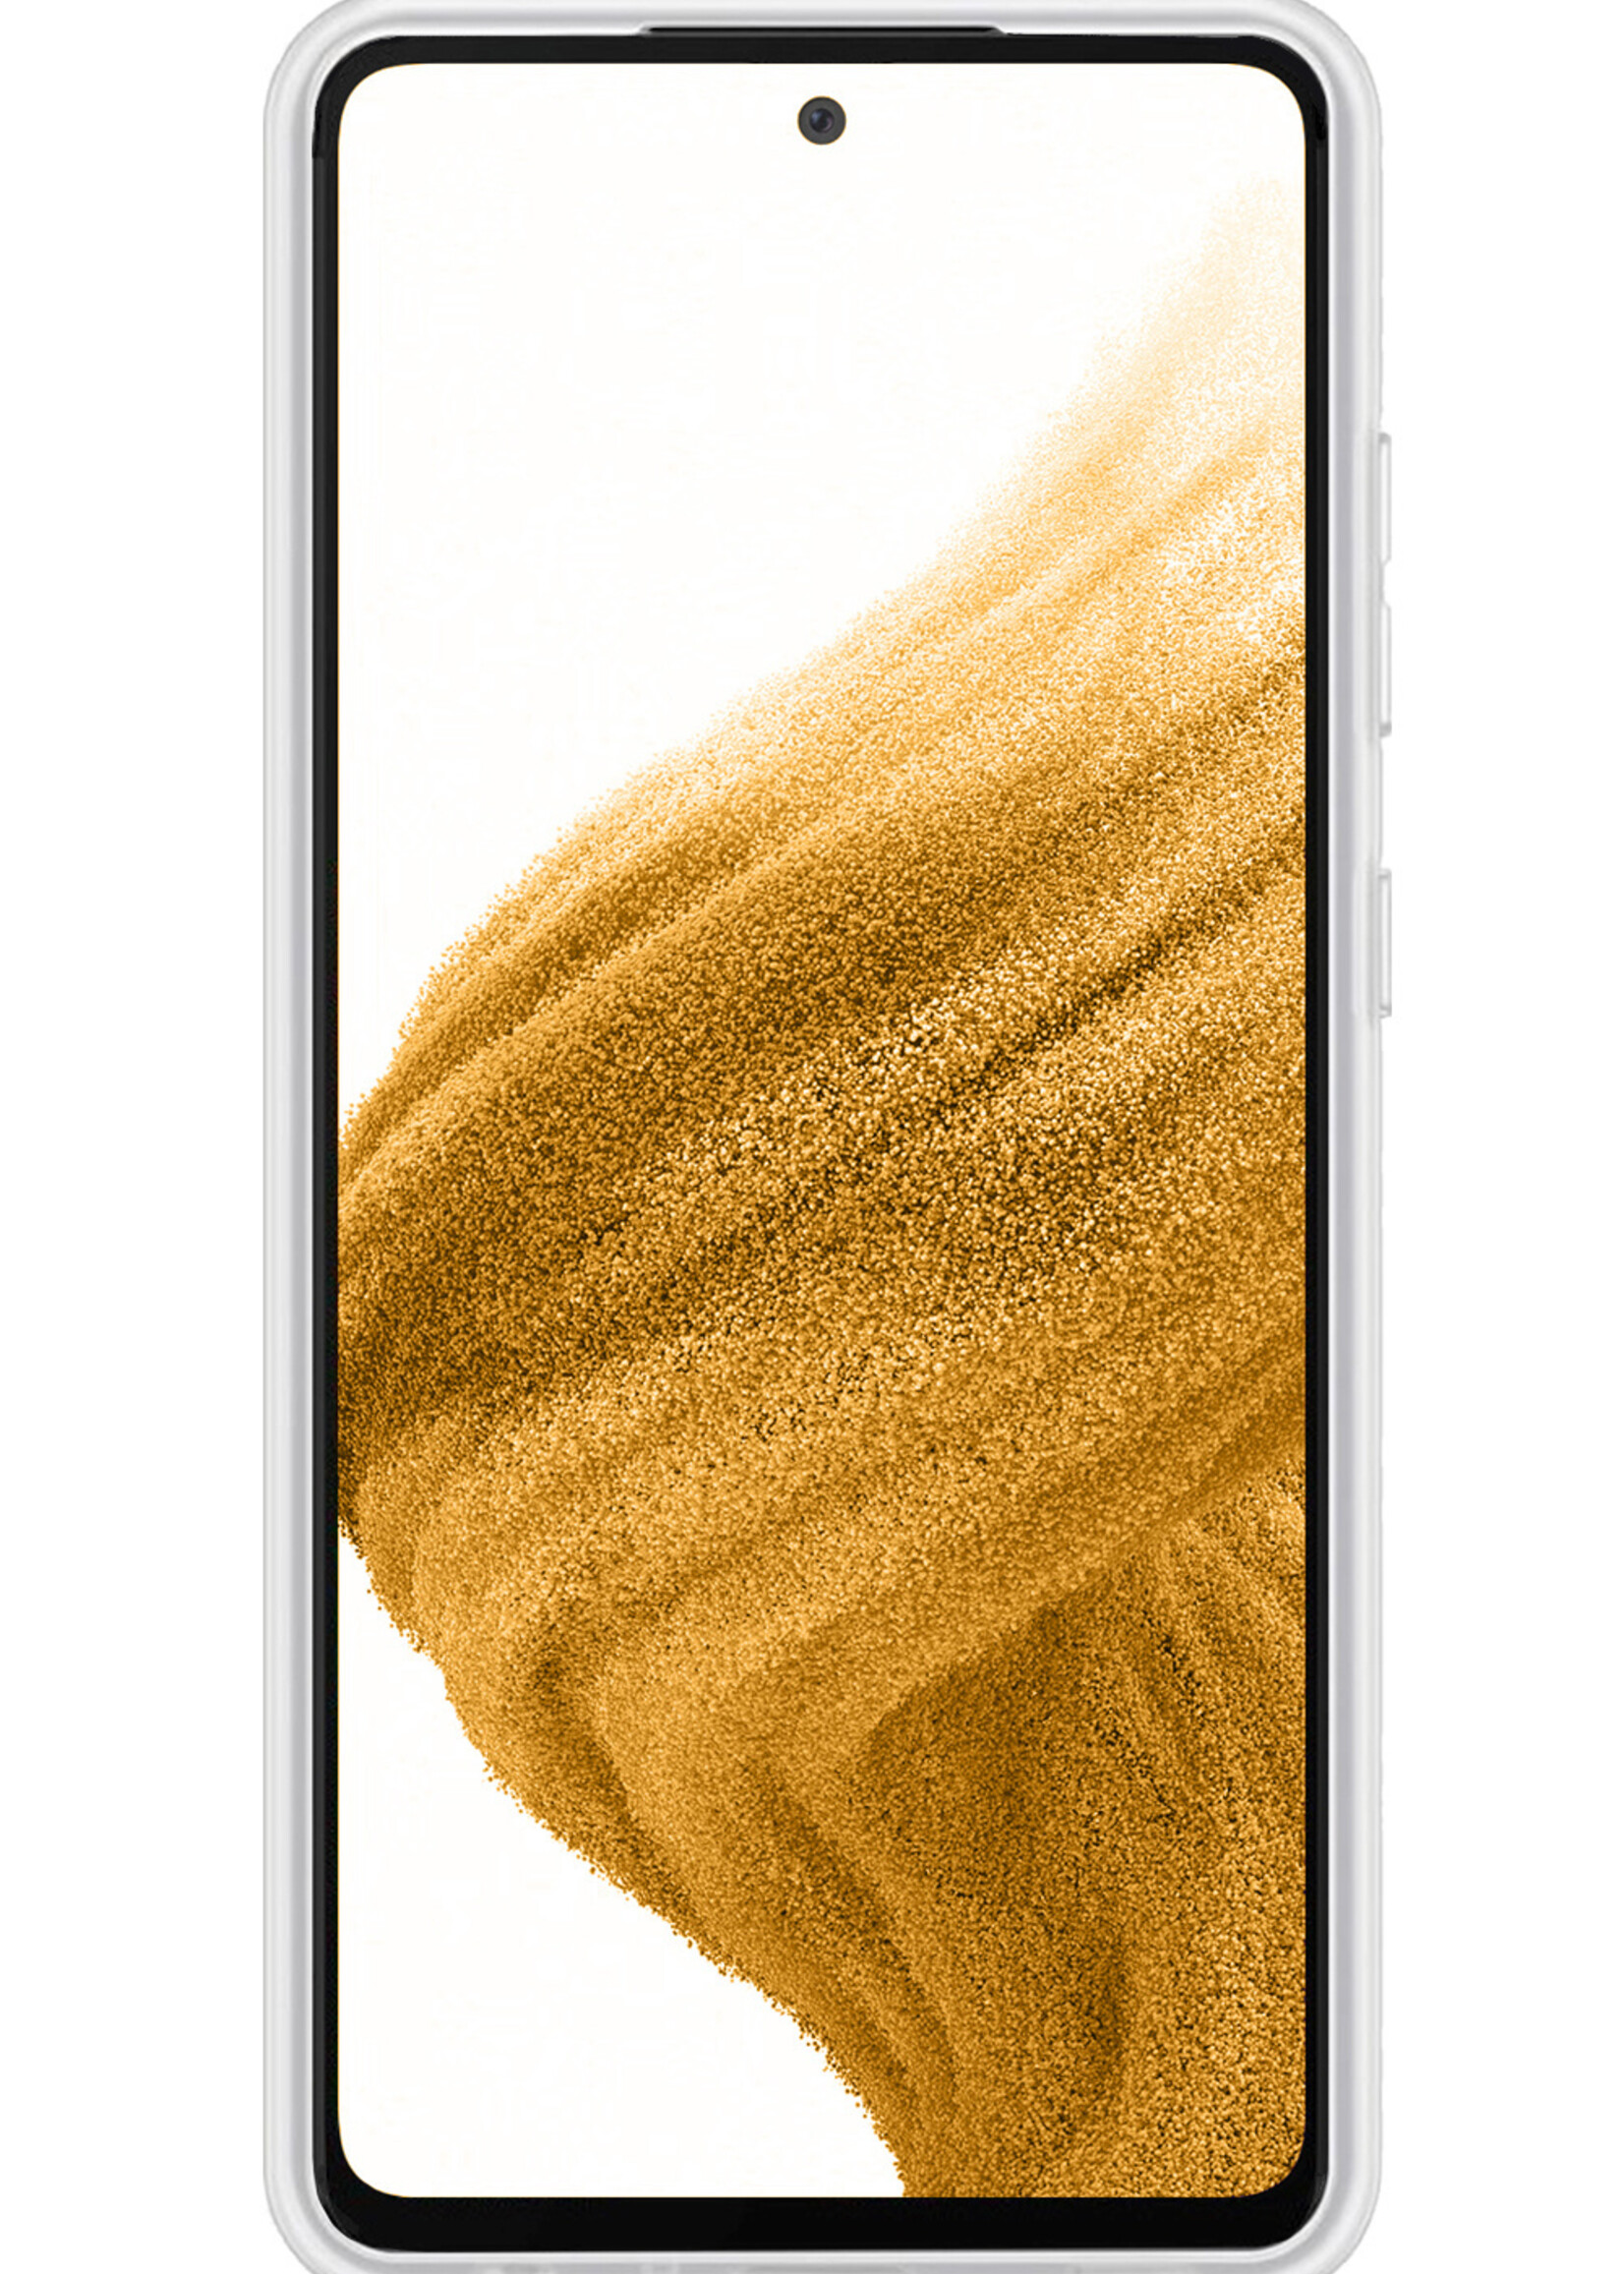 LUQ Hoesje Geschikt voor Samsung A53 Hoesje Siliconen Case - Hoes Geschikt voor Samsung Galaxy A53 Hoes Siliconen - Transparant - 2 Stuks